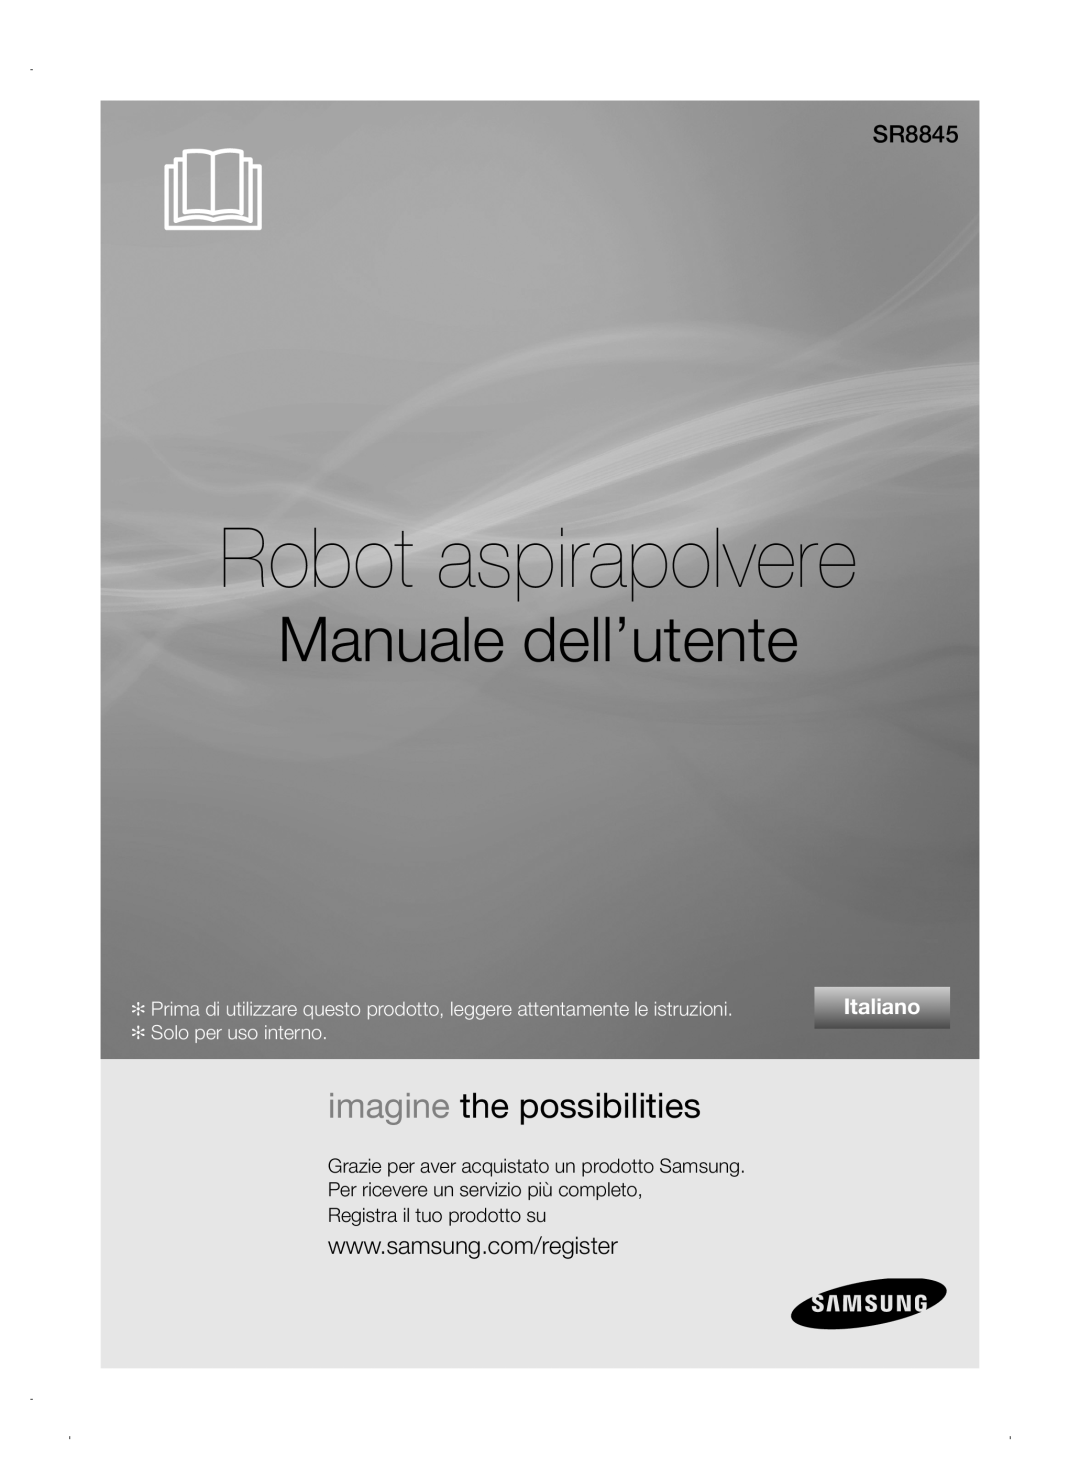 Samsung VCR8845T3A/XEF manual Robot aspirapolvere, Manuale dell’utente, imagine the possibilities, SR8845, Italiano 